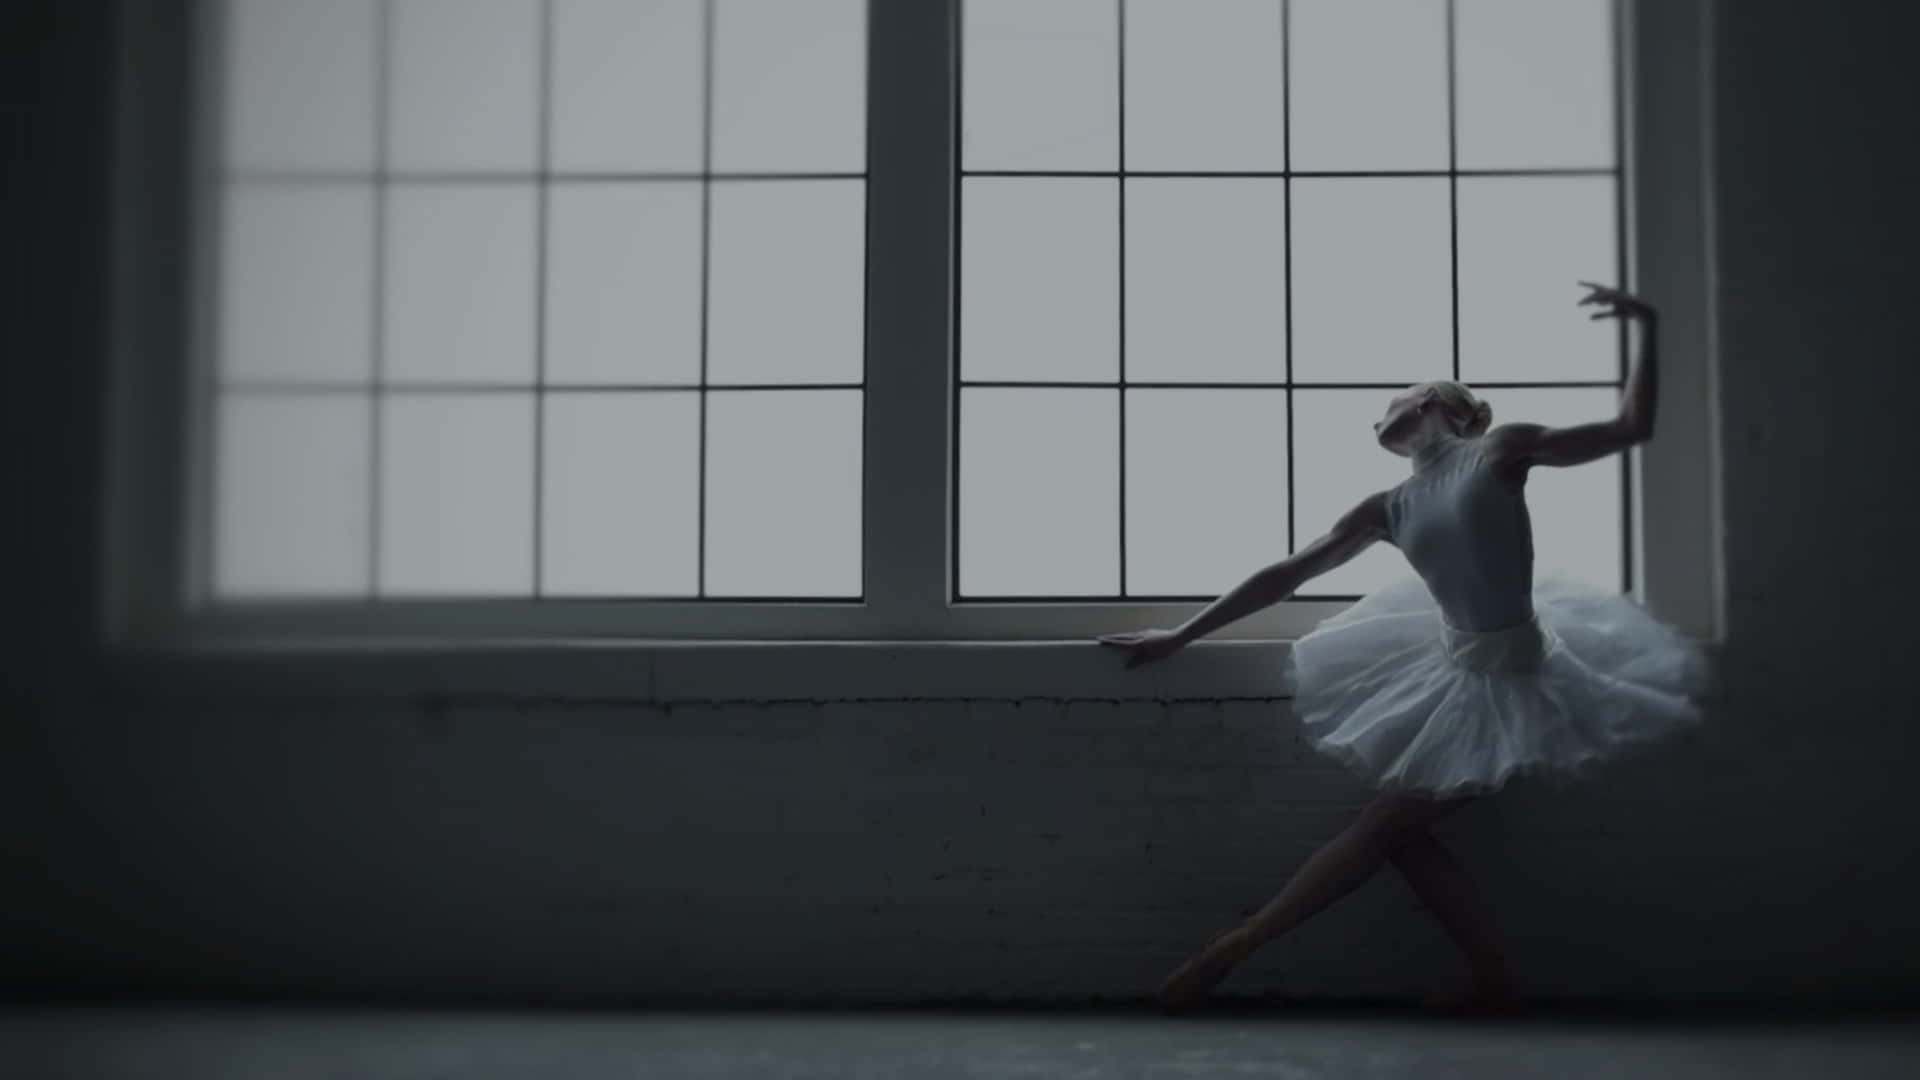 Fotografiain Bianco E Nero Di Una Silhouette Di Ballerina Sfondo